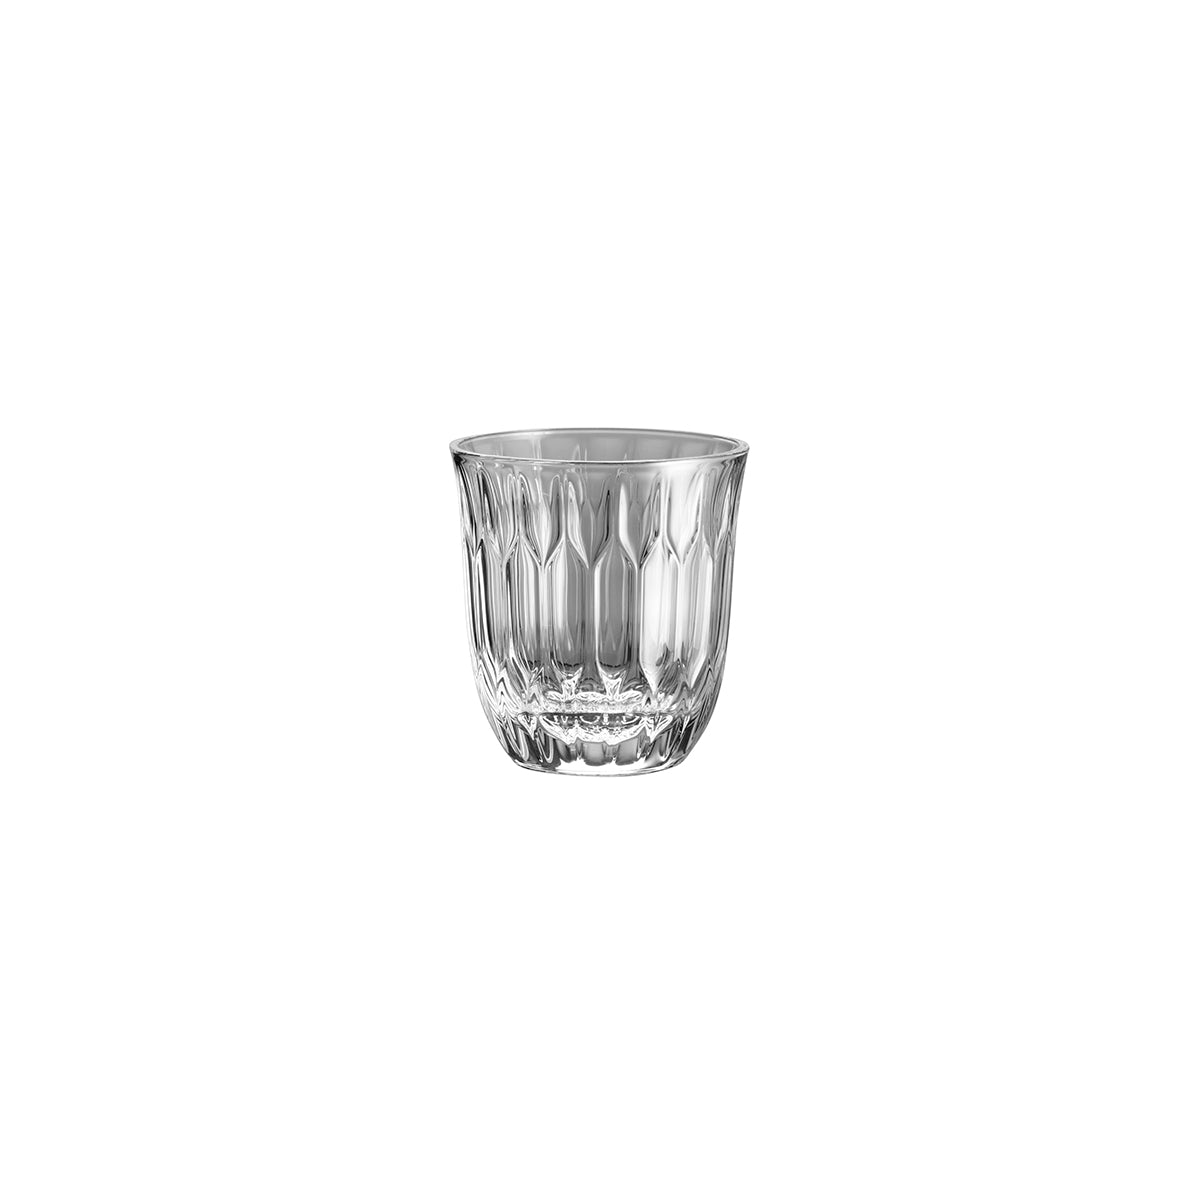 55.0118.0002 WMF Cappuccino Flat White Glass 230ml Tomkin Australia Hospitality Supplies